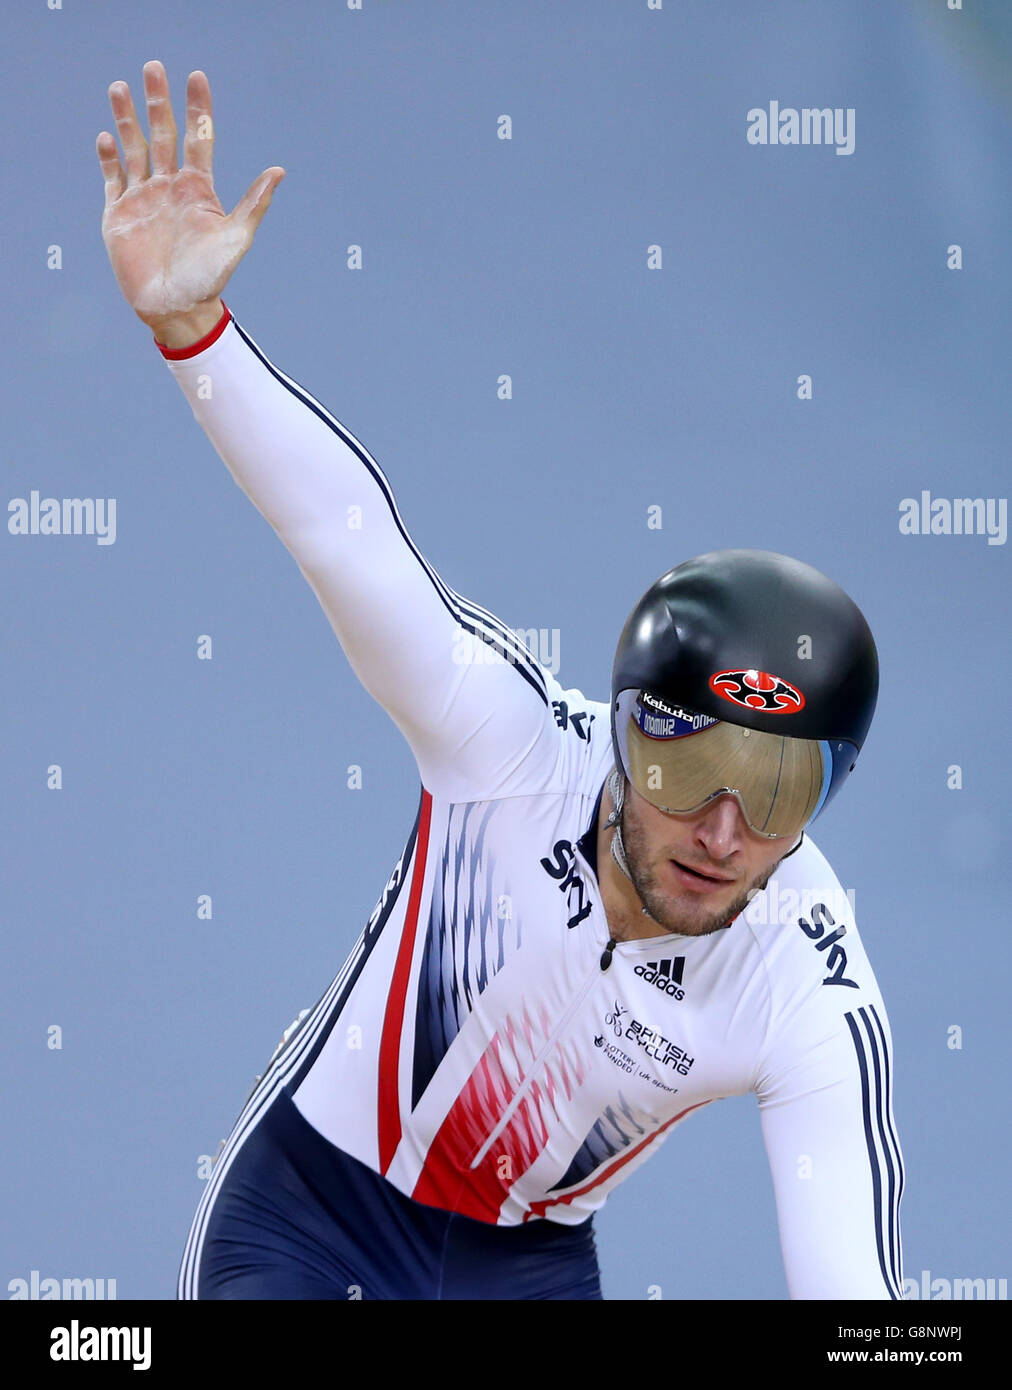 Il Callum Skinner della Gran Bretagna festeggia dopo le qualifiche Men's Sprint durante il terzo giorno dei Campionati mondiali di ciclismo su pista UCI a Lee Valley VeloPark, Londra. Foto Stock